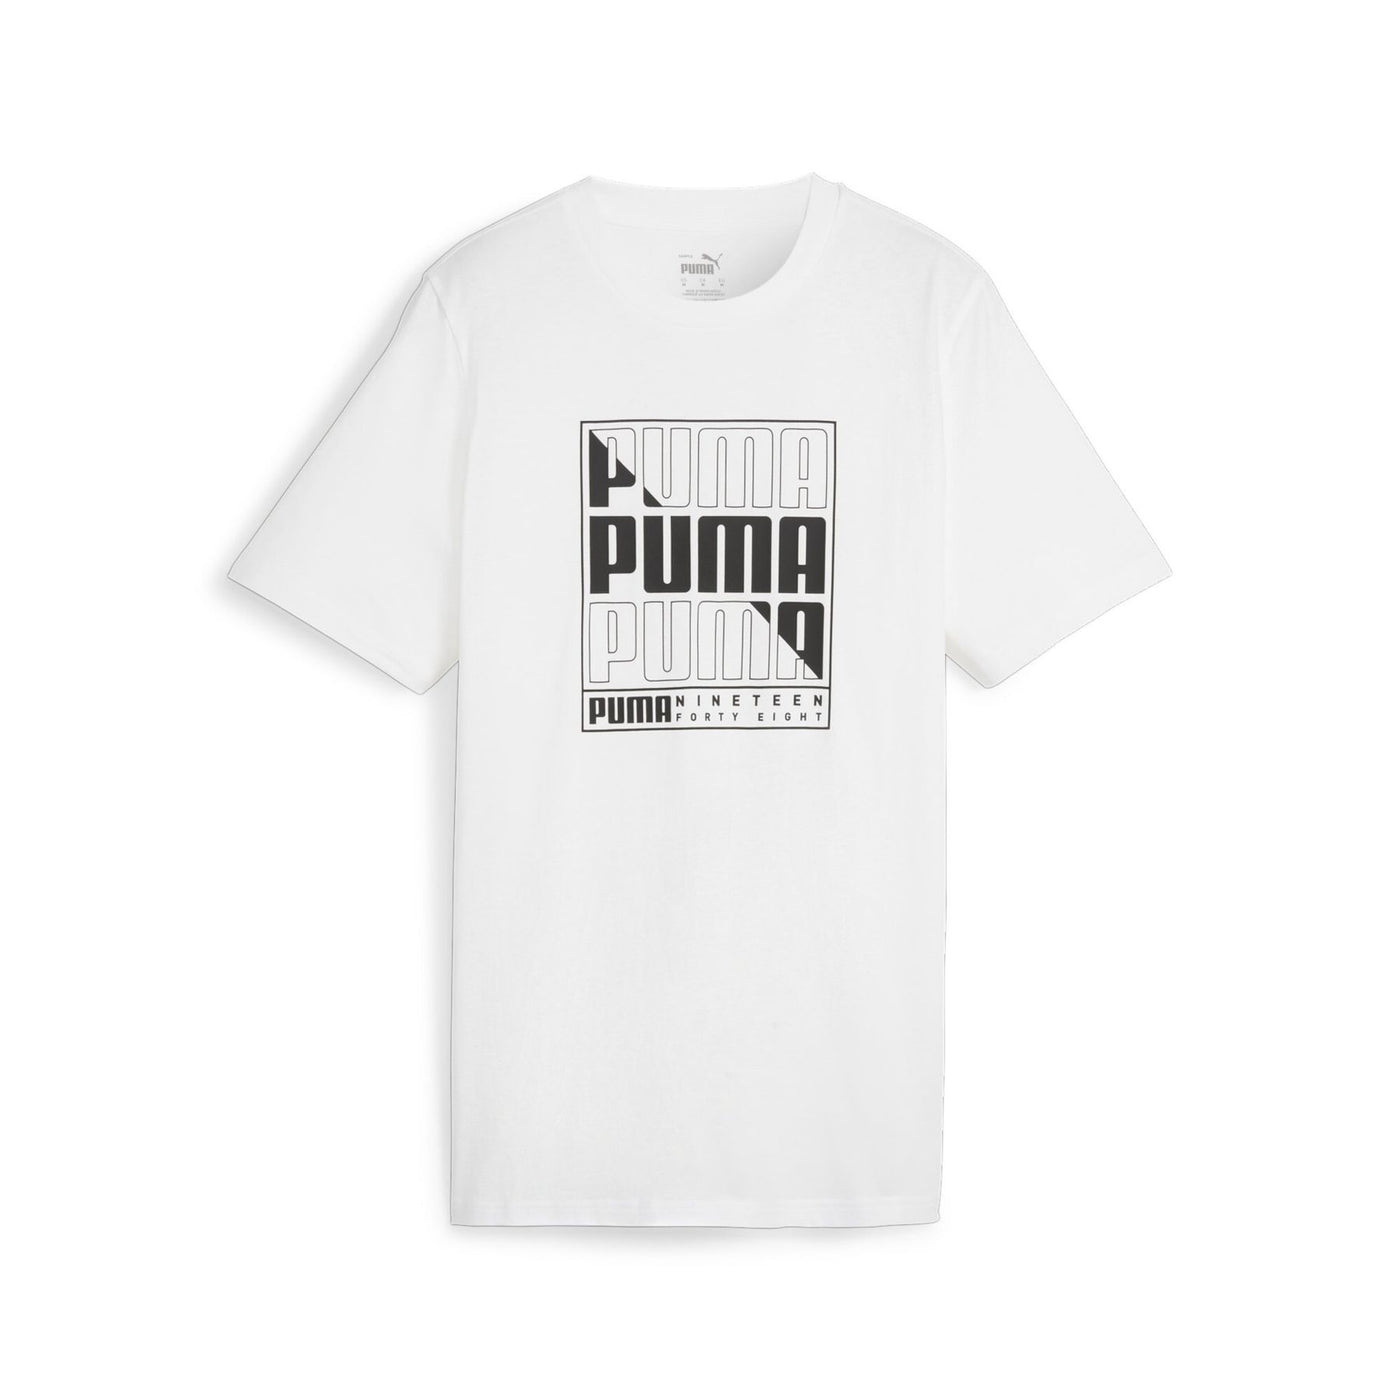 680172-02 - T-Shirt - Puma